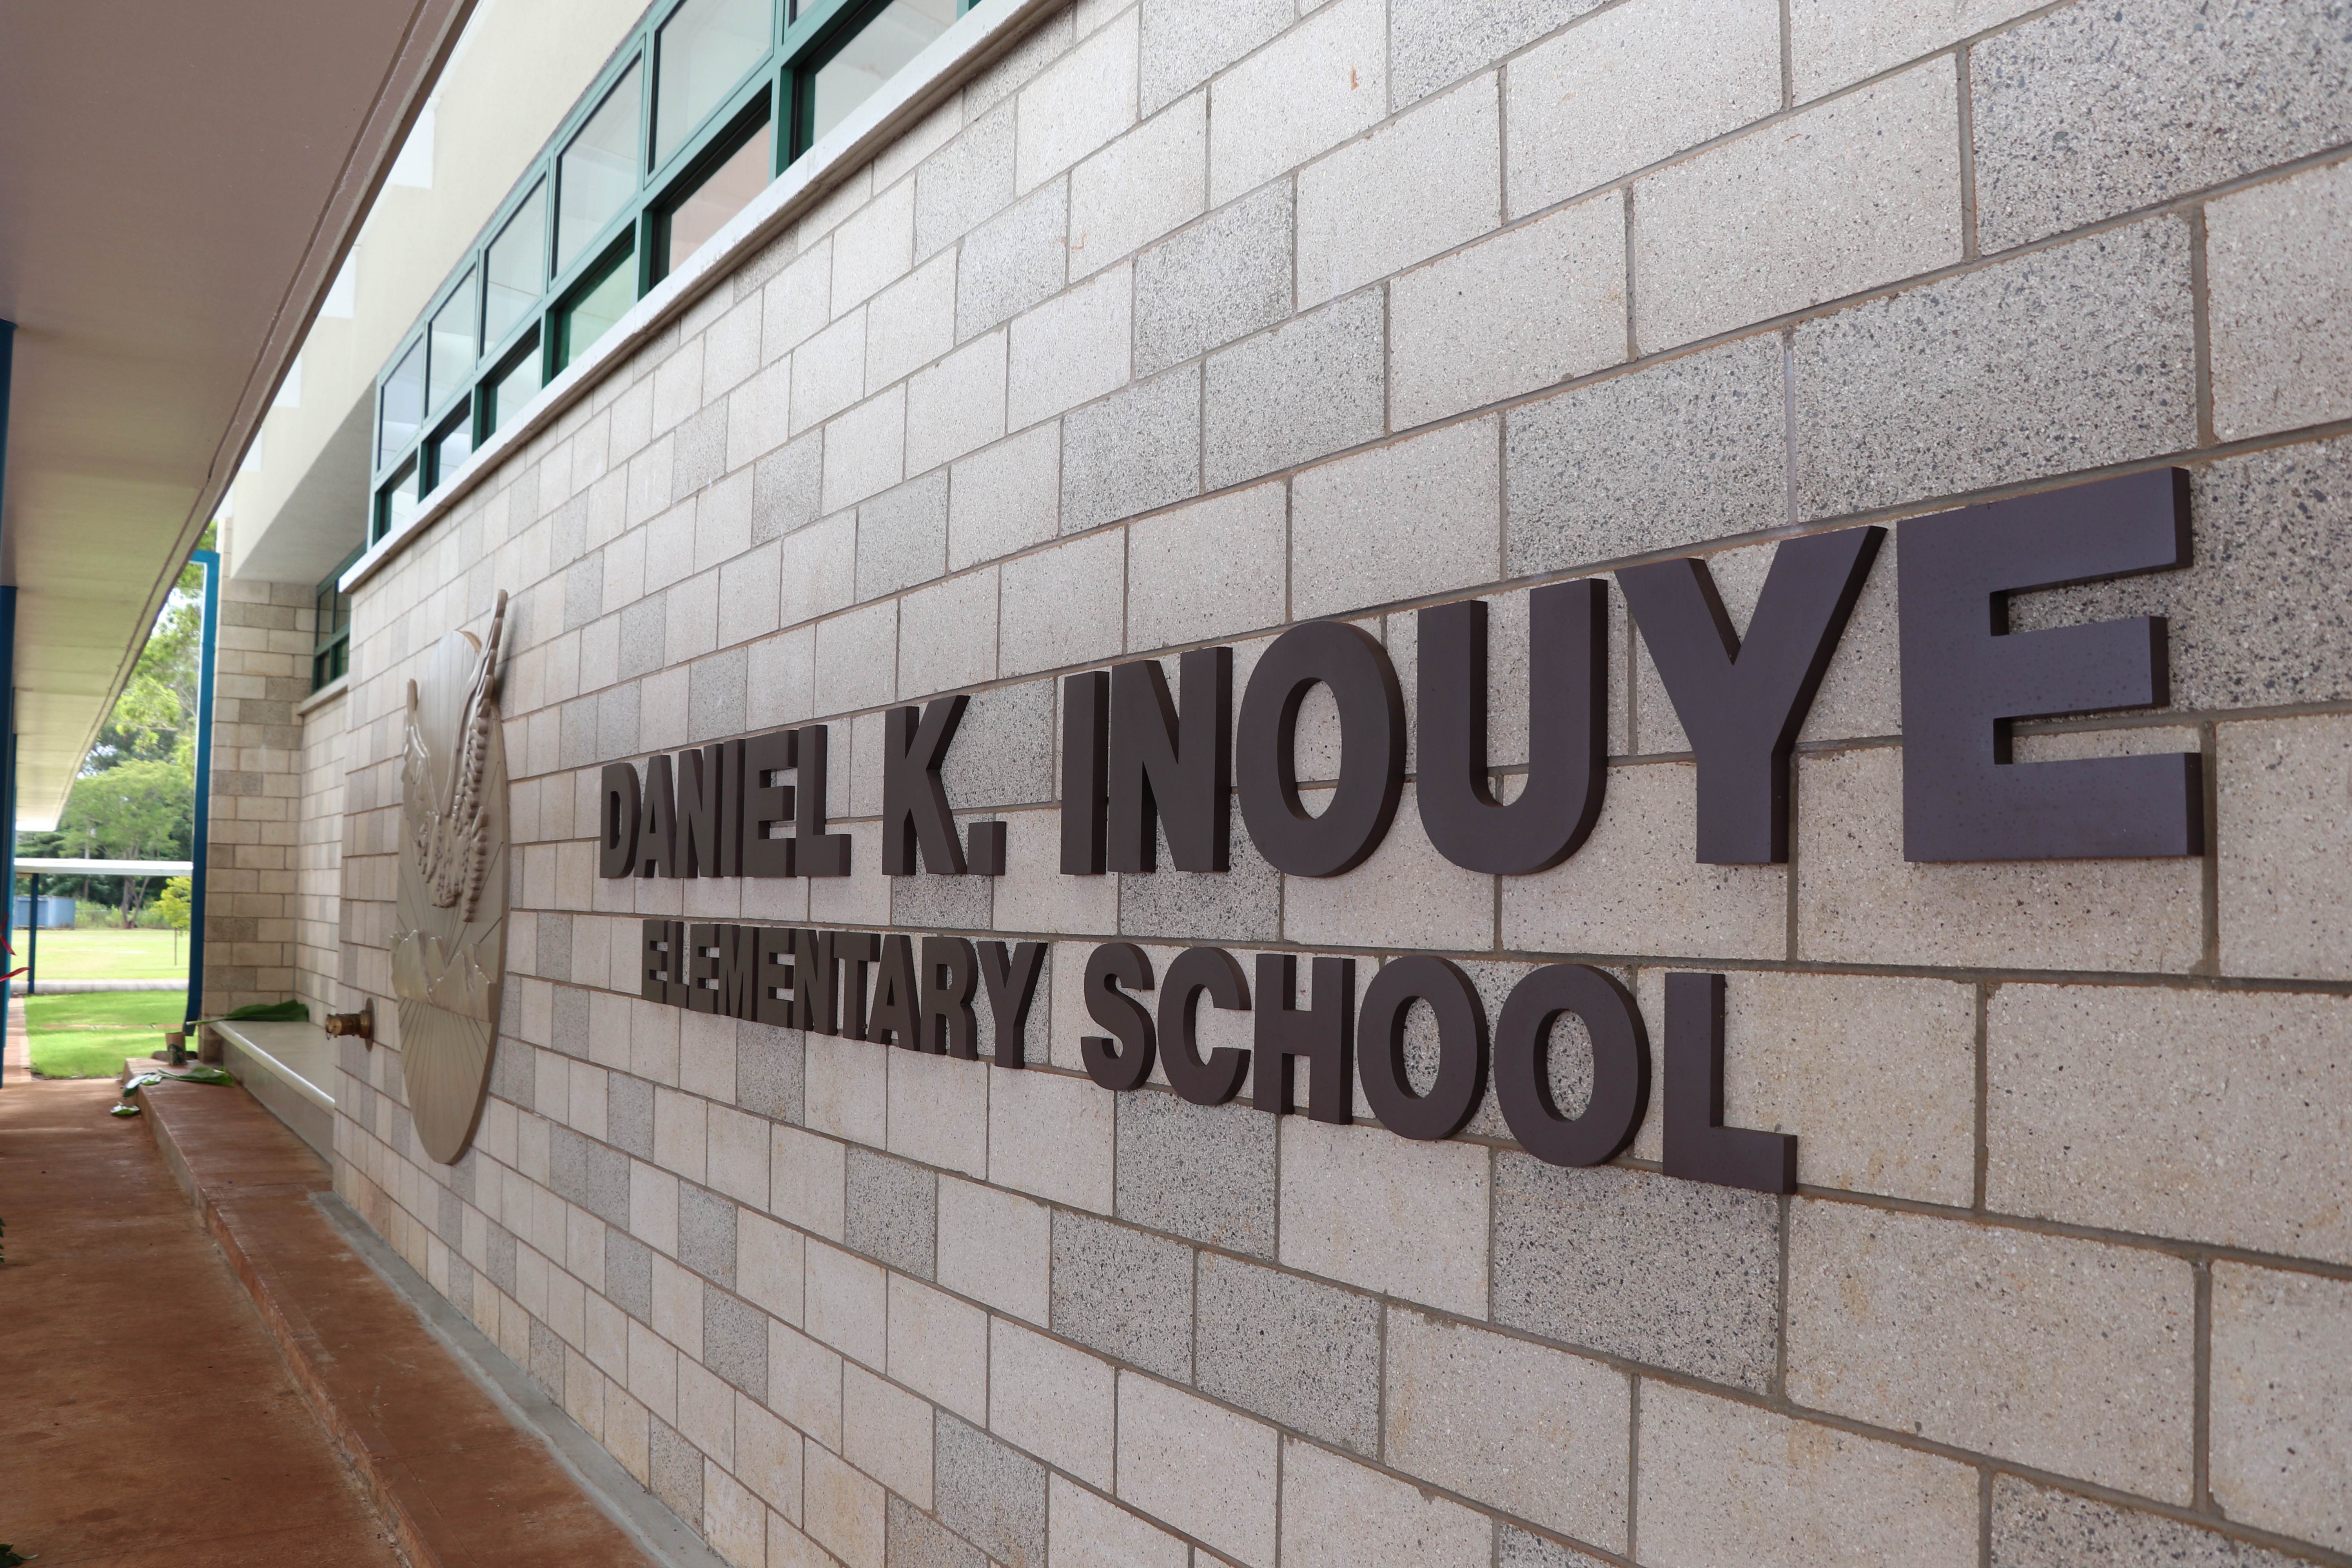 Daniel K. Inouye Elementary School